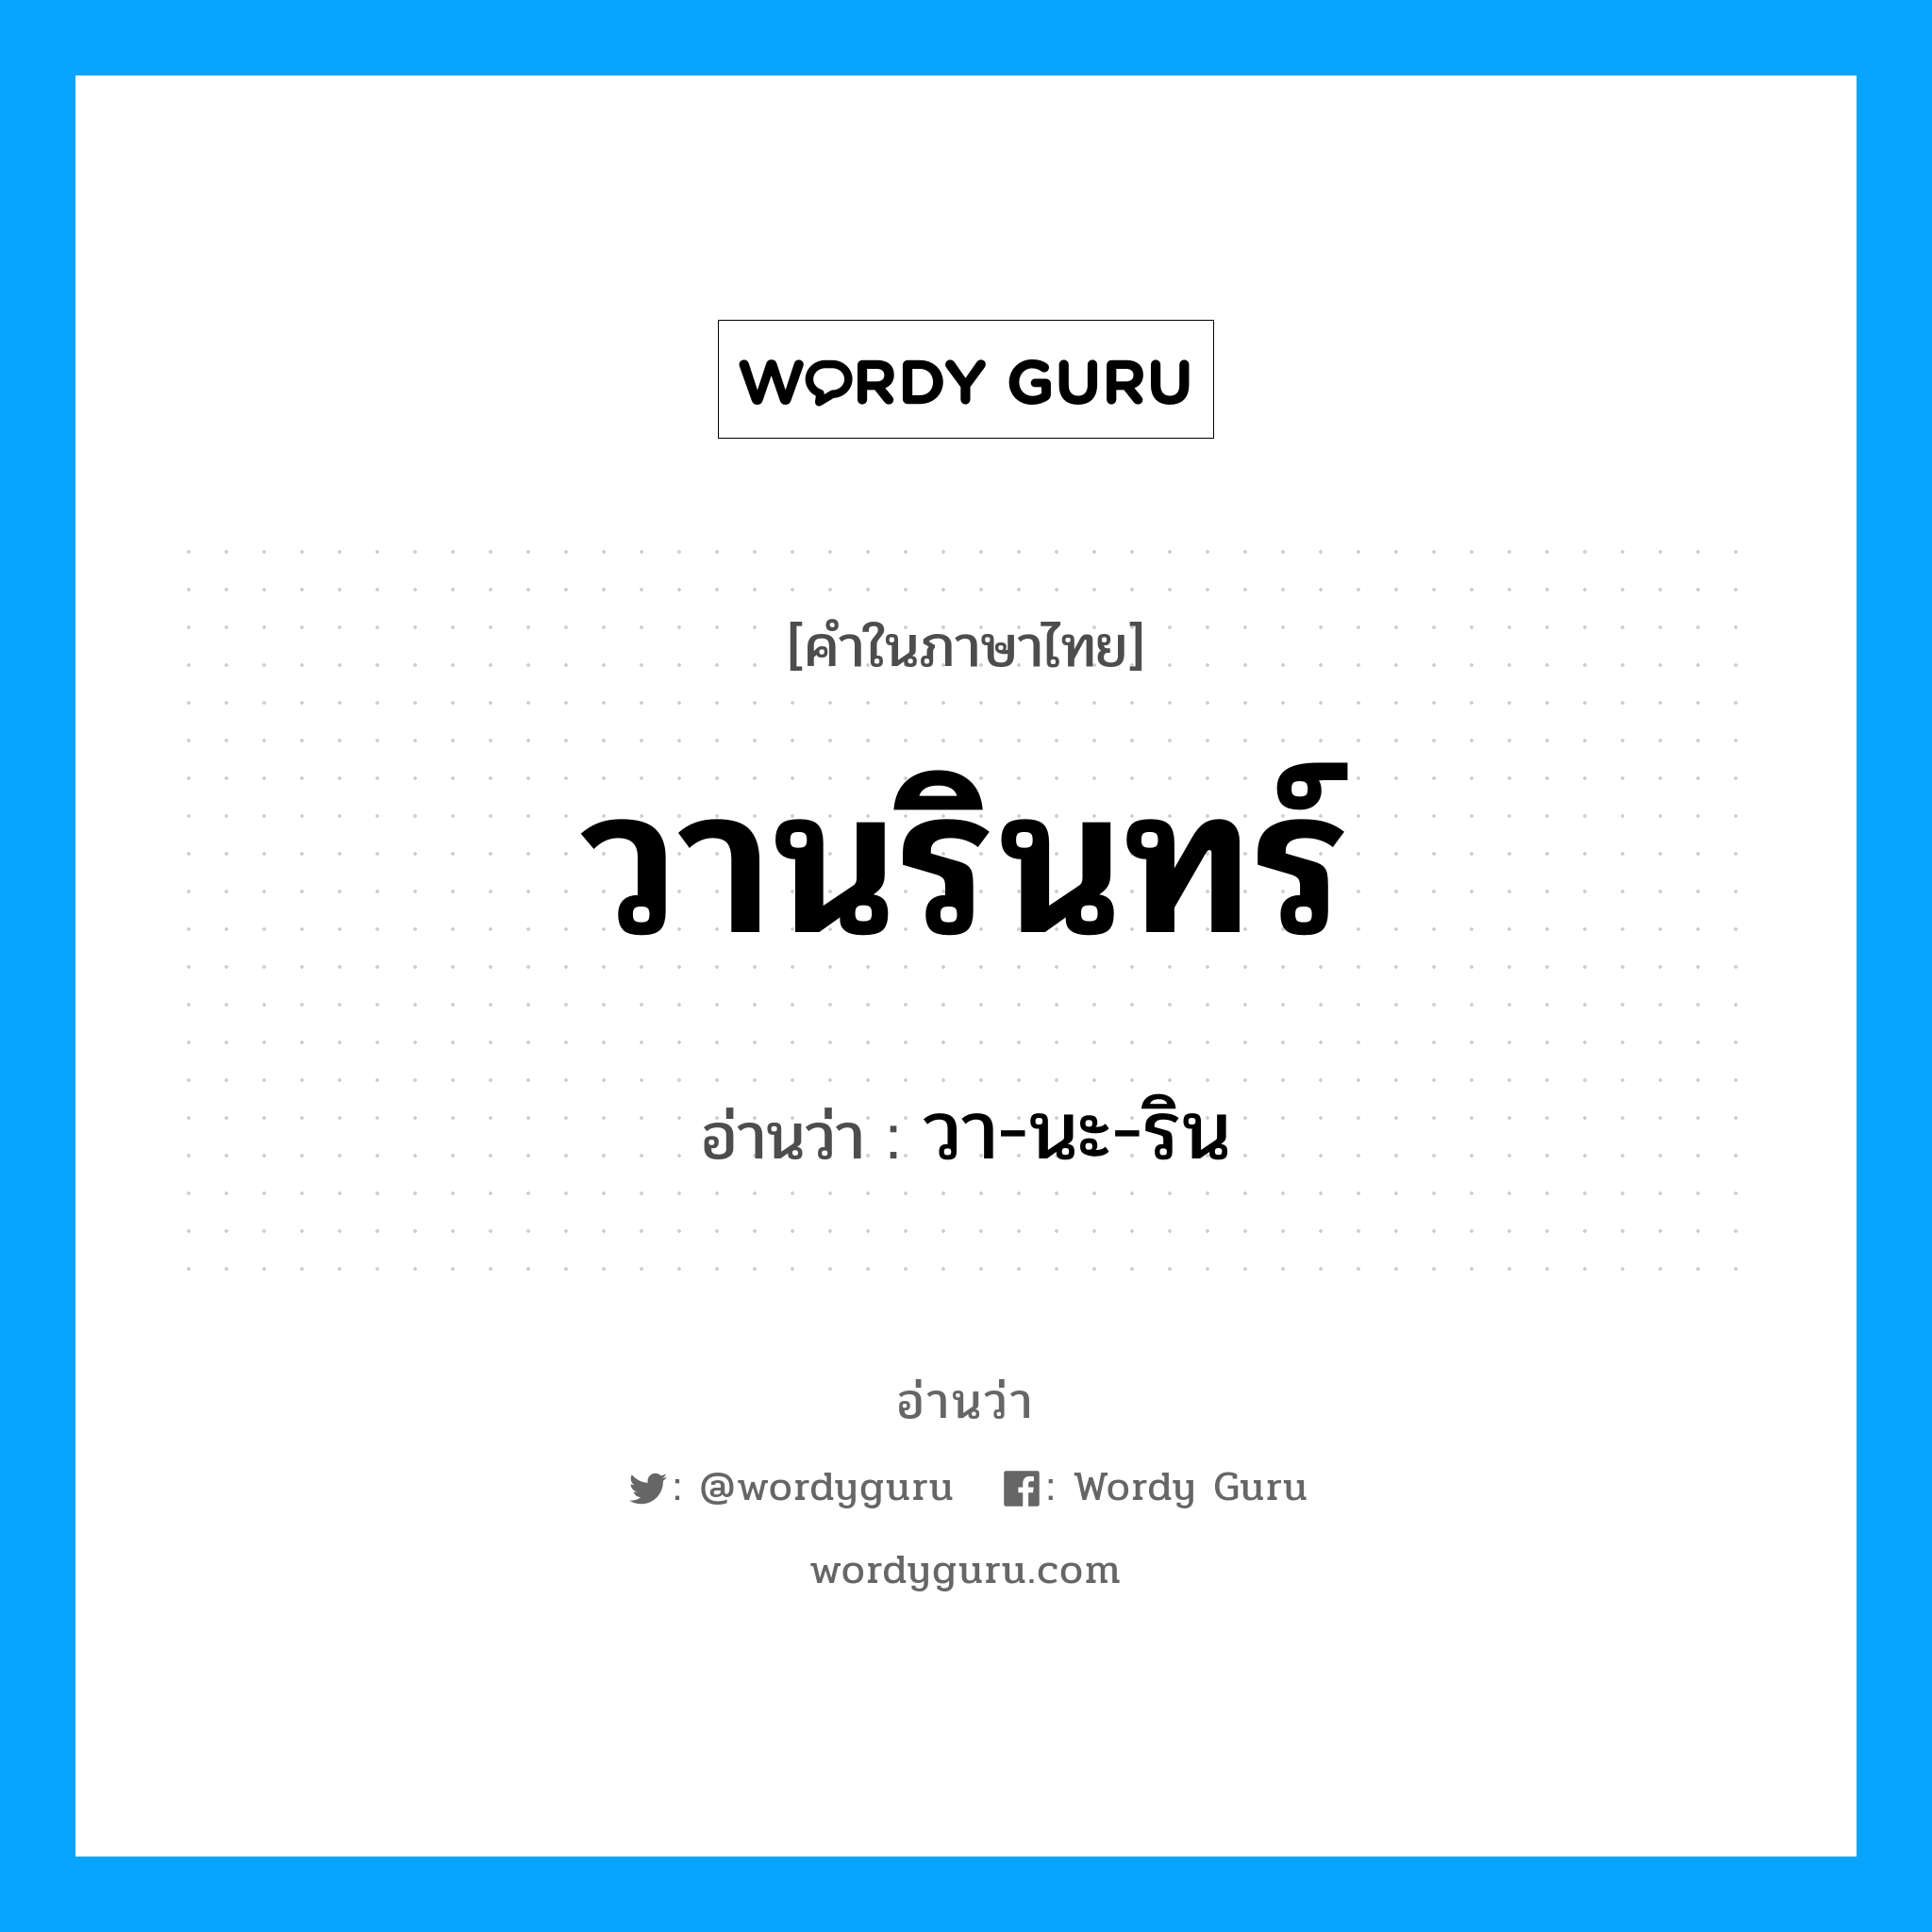 วา-นะ-ริน เป็นคำอ่านของคำไหน?, คำในภาษาไทย วา-นะ-ริน อ่านว่า วานรินทร์